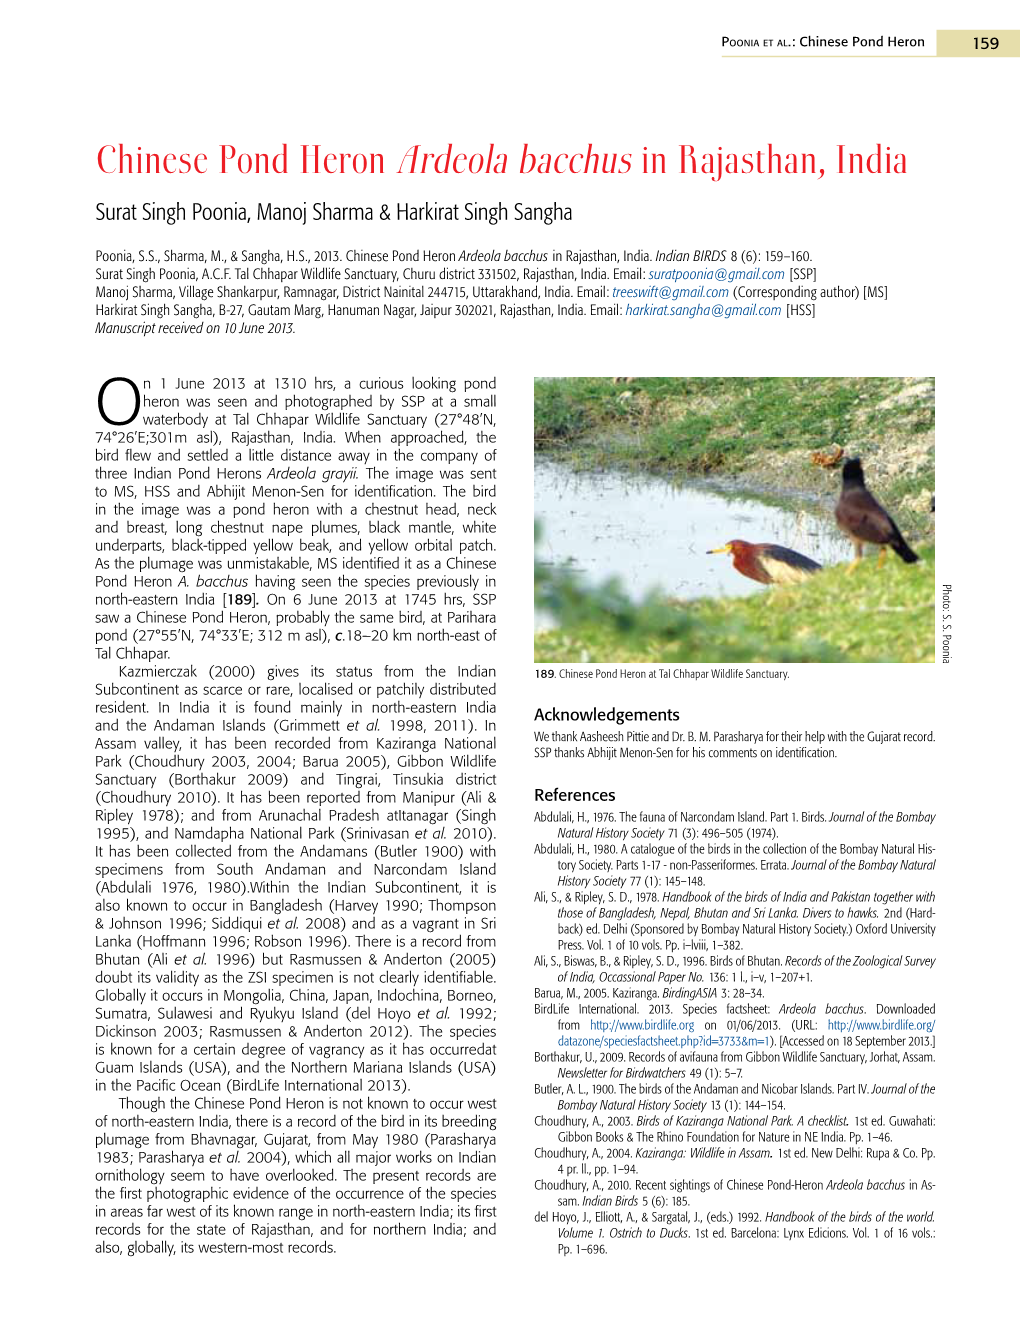 Chinese Pond Heron Ardeola Bacchus in Rajasthan, India Surat Singh Poonia, Manoj Sharma & Harkirat Singh Sangha